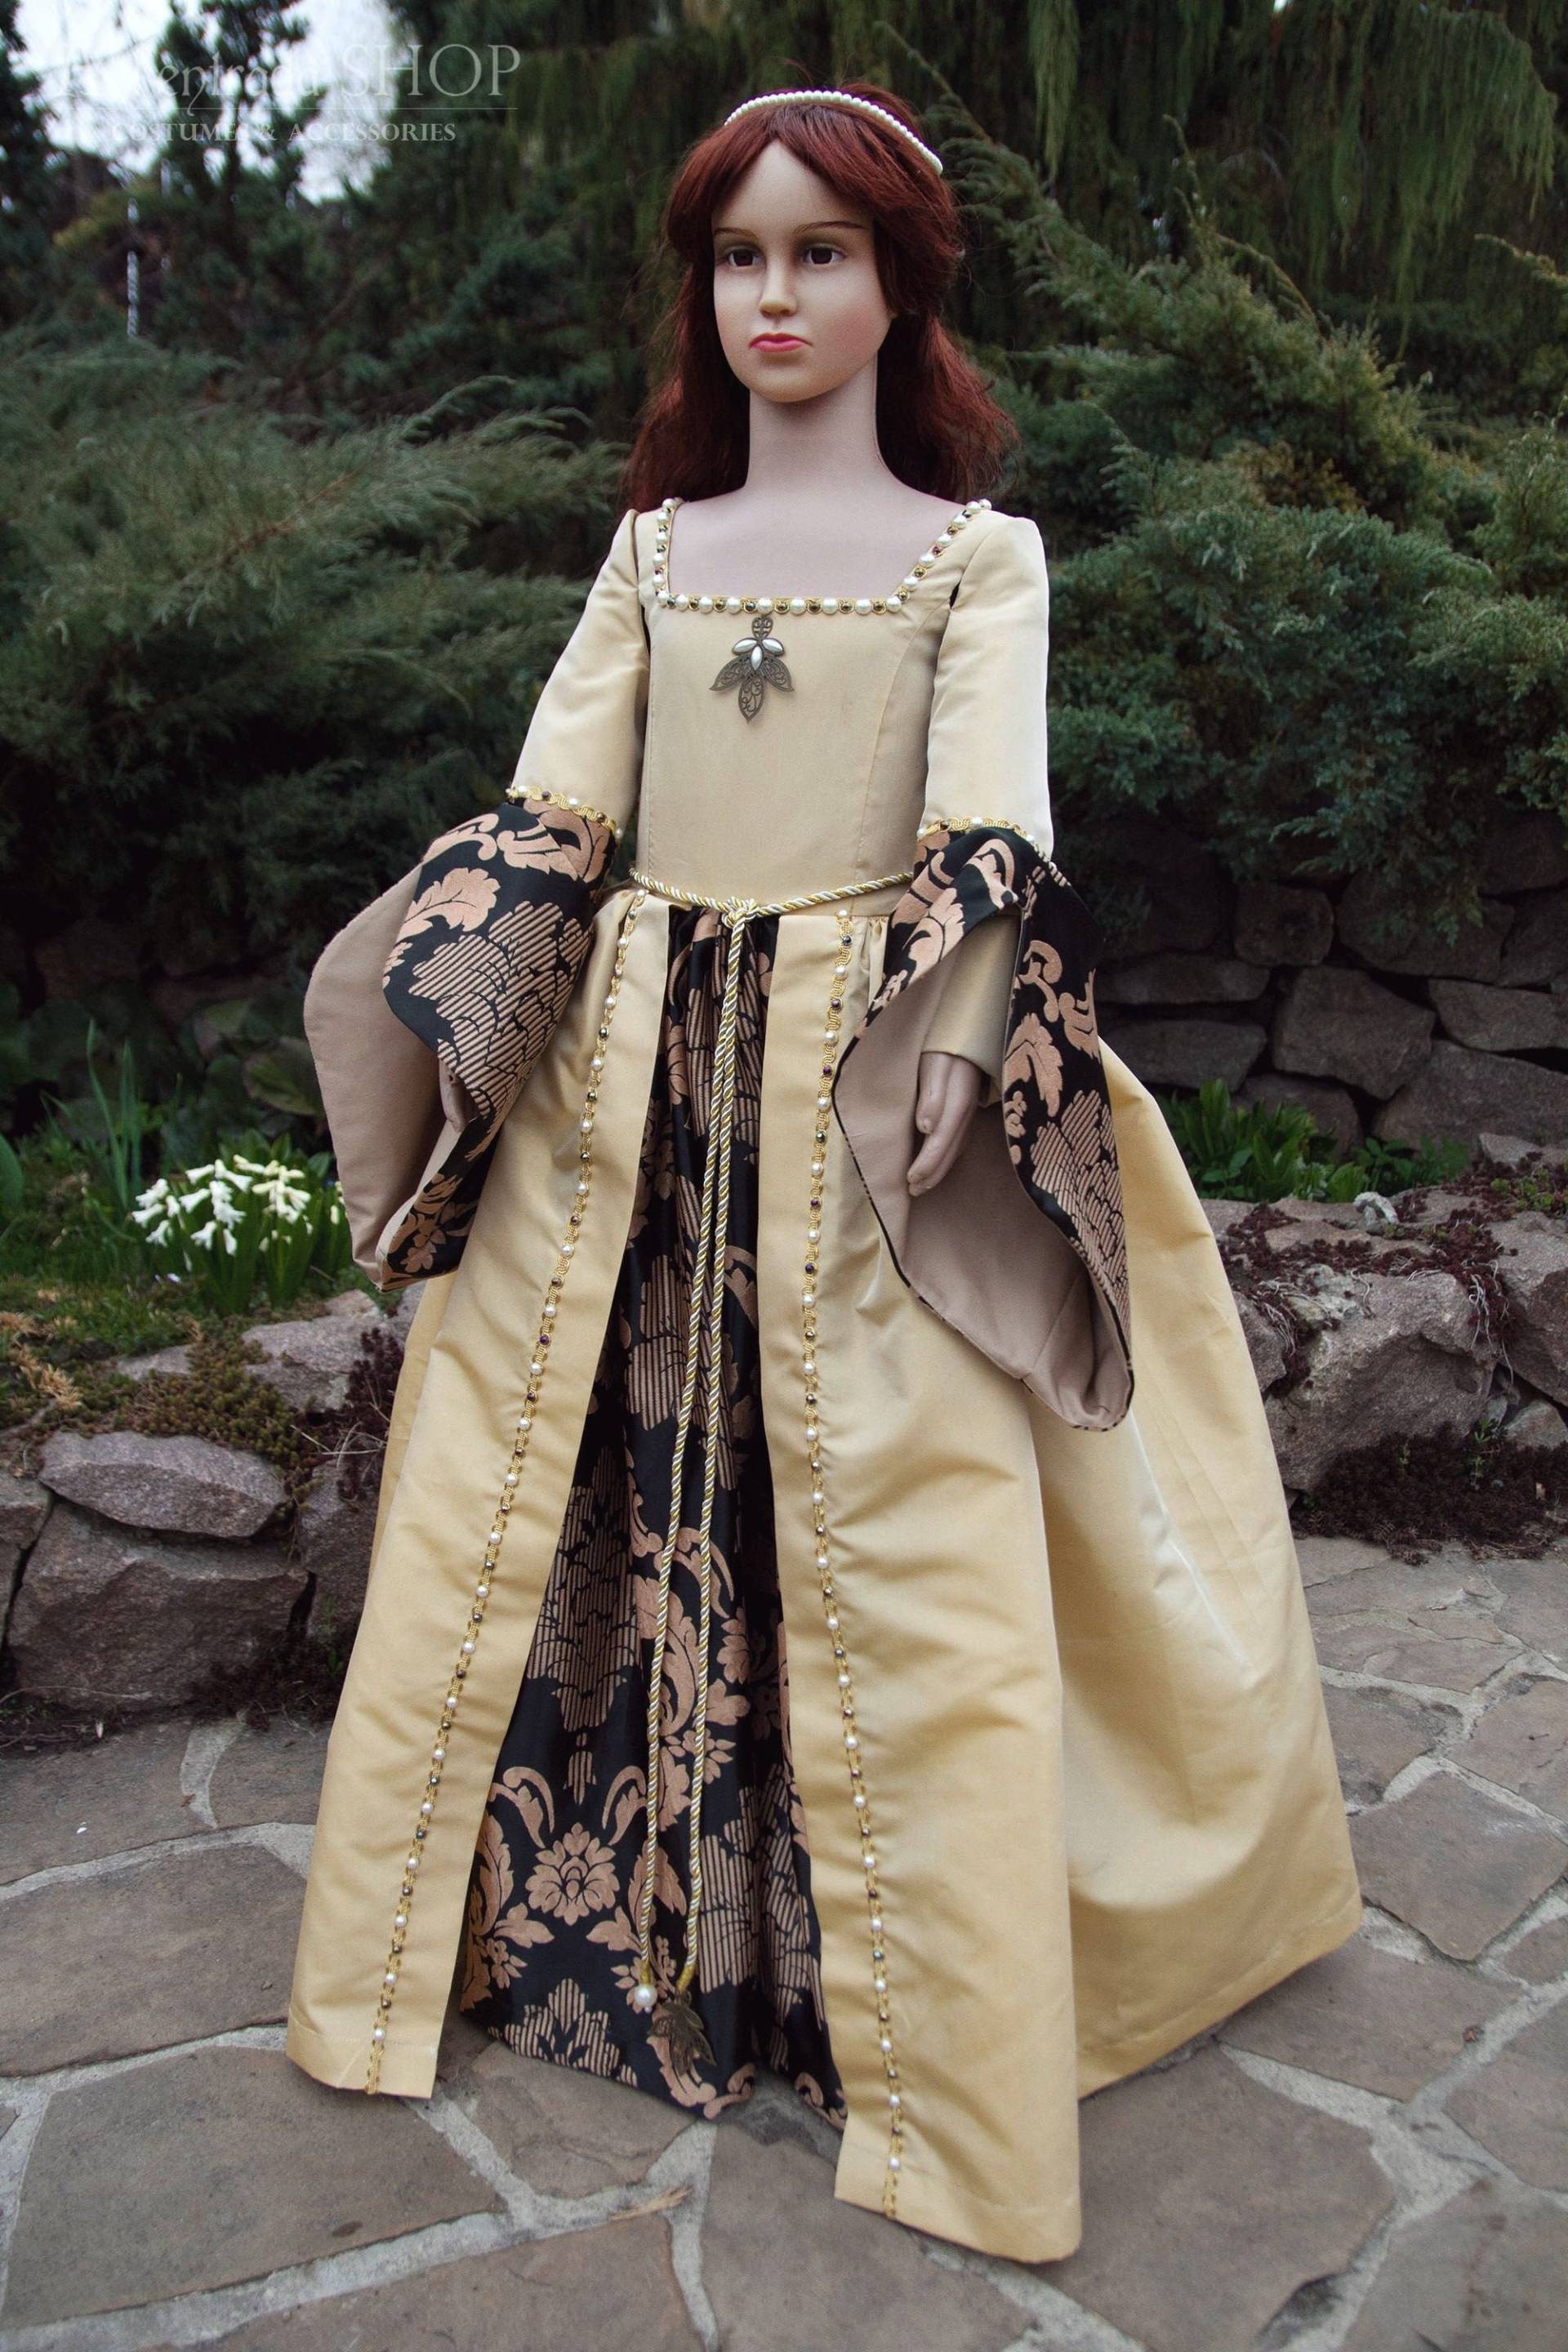 Renaissance Tudor Kleid Für Mädchen. Kleinkinderkostüm. Kinder Queen Elizabeth. Robe von AlentradaSHOP